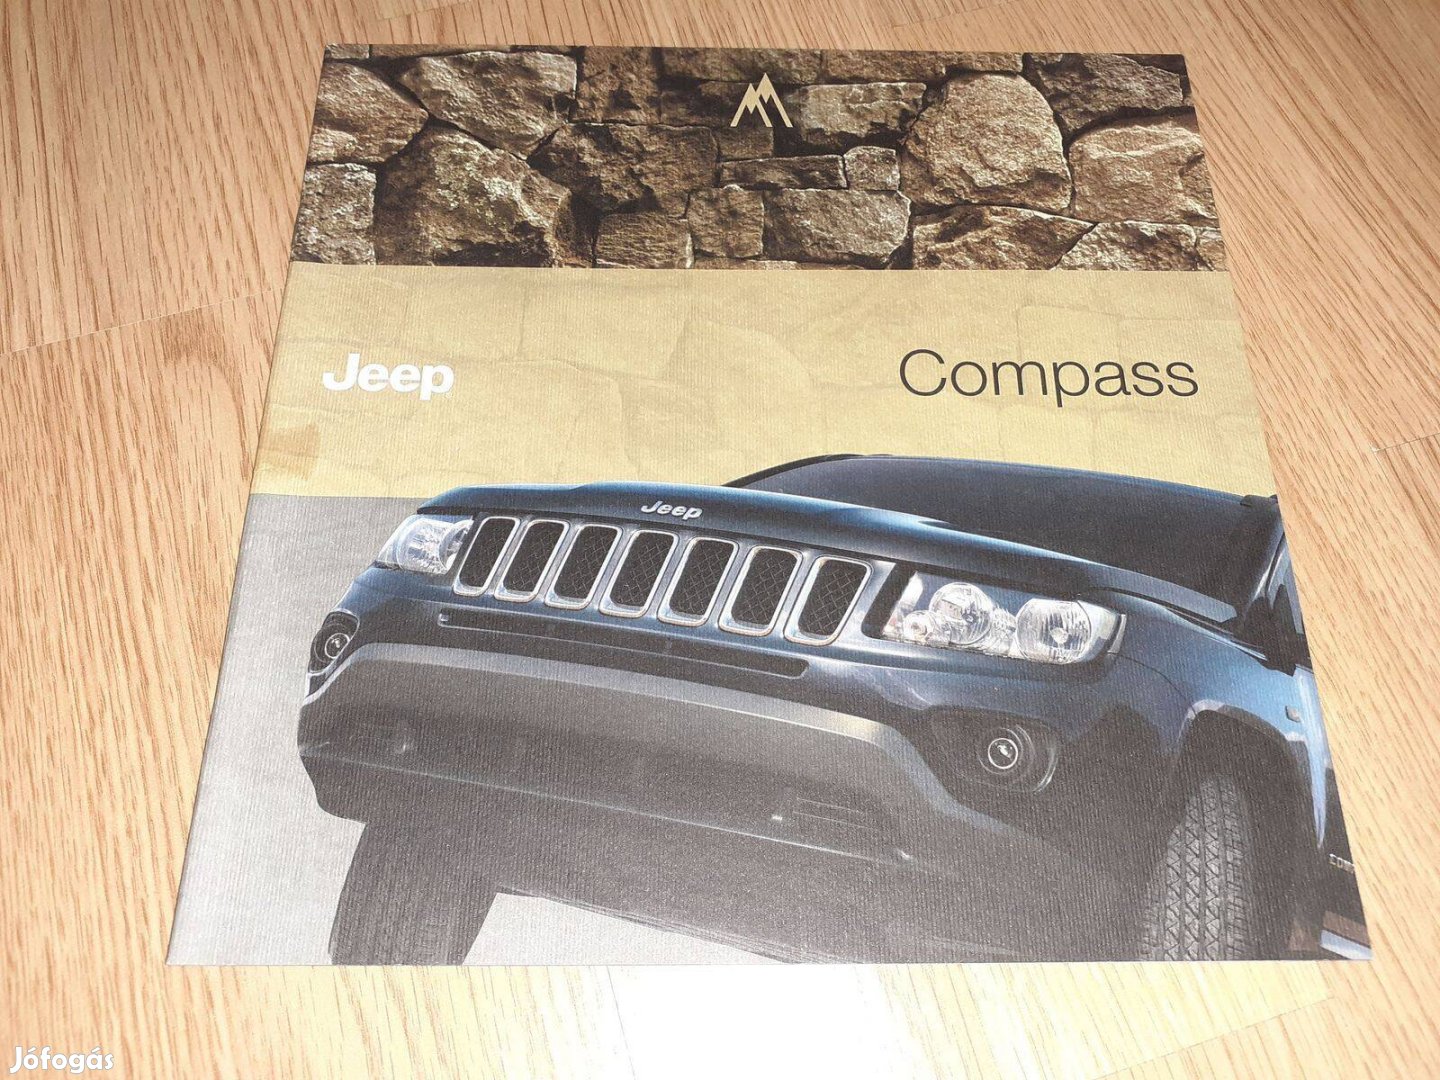 Jeep Compass prospektus - 2011, magyar nyelvű